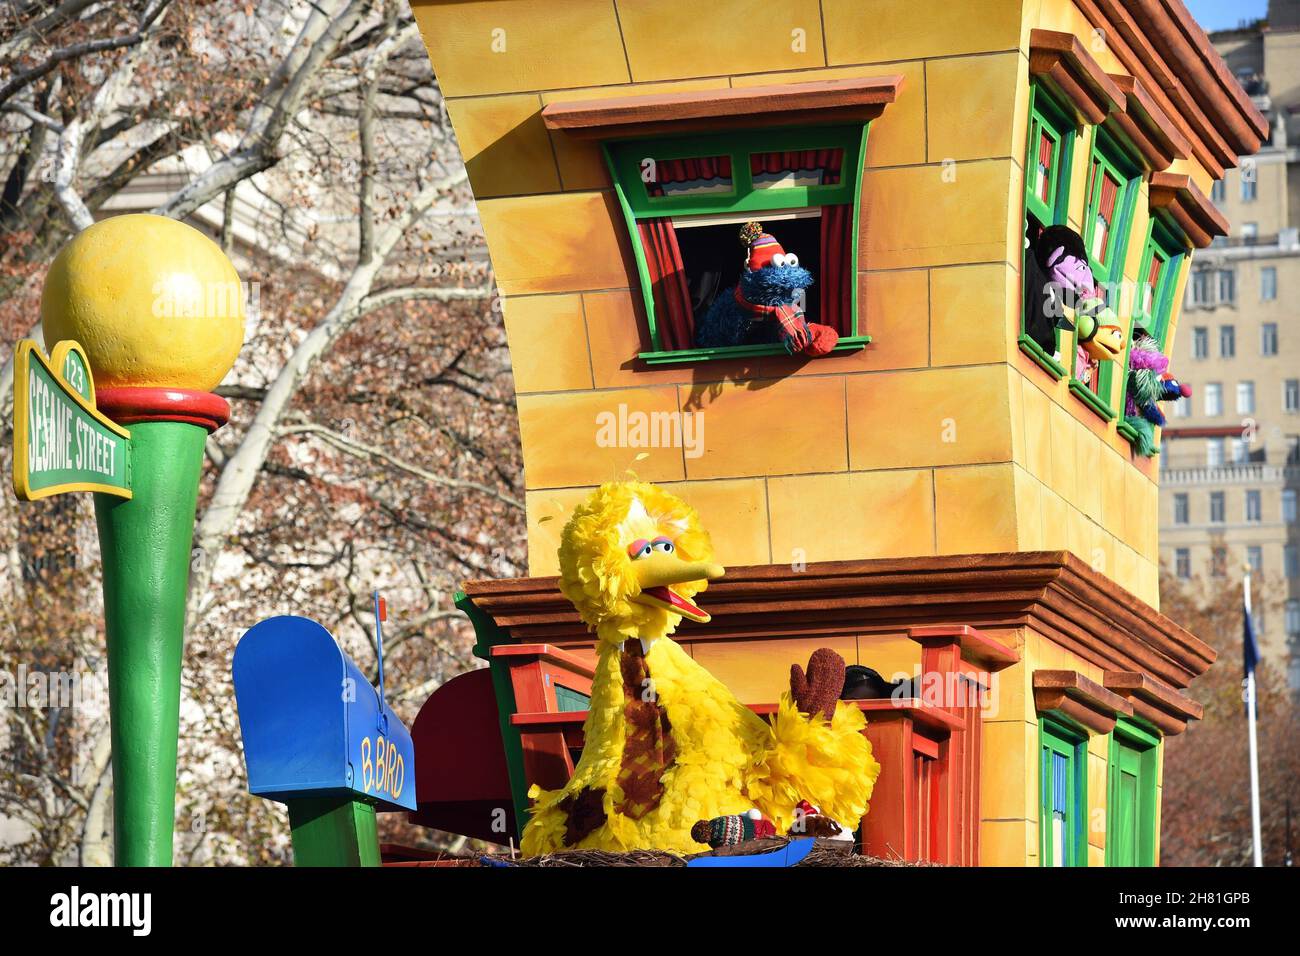 New York, NY, États-Unis.25 novembre 2021.Sesame Street Float, Big Bird, Muppets Out and about pour la 95e édition annuelle de la parade de Thanksgiving de Macy, New York, NY 25 novembre 2021.Crédit : Kristin Callahan/Everett Collection/Alay Live News Banque D'Images